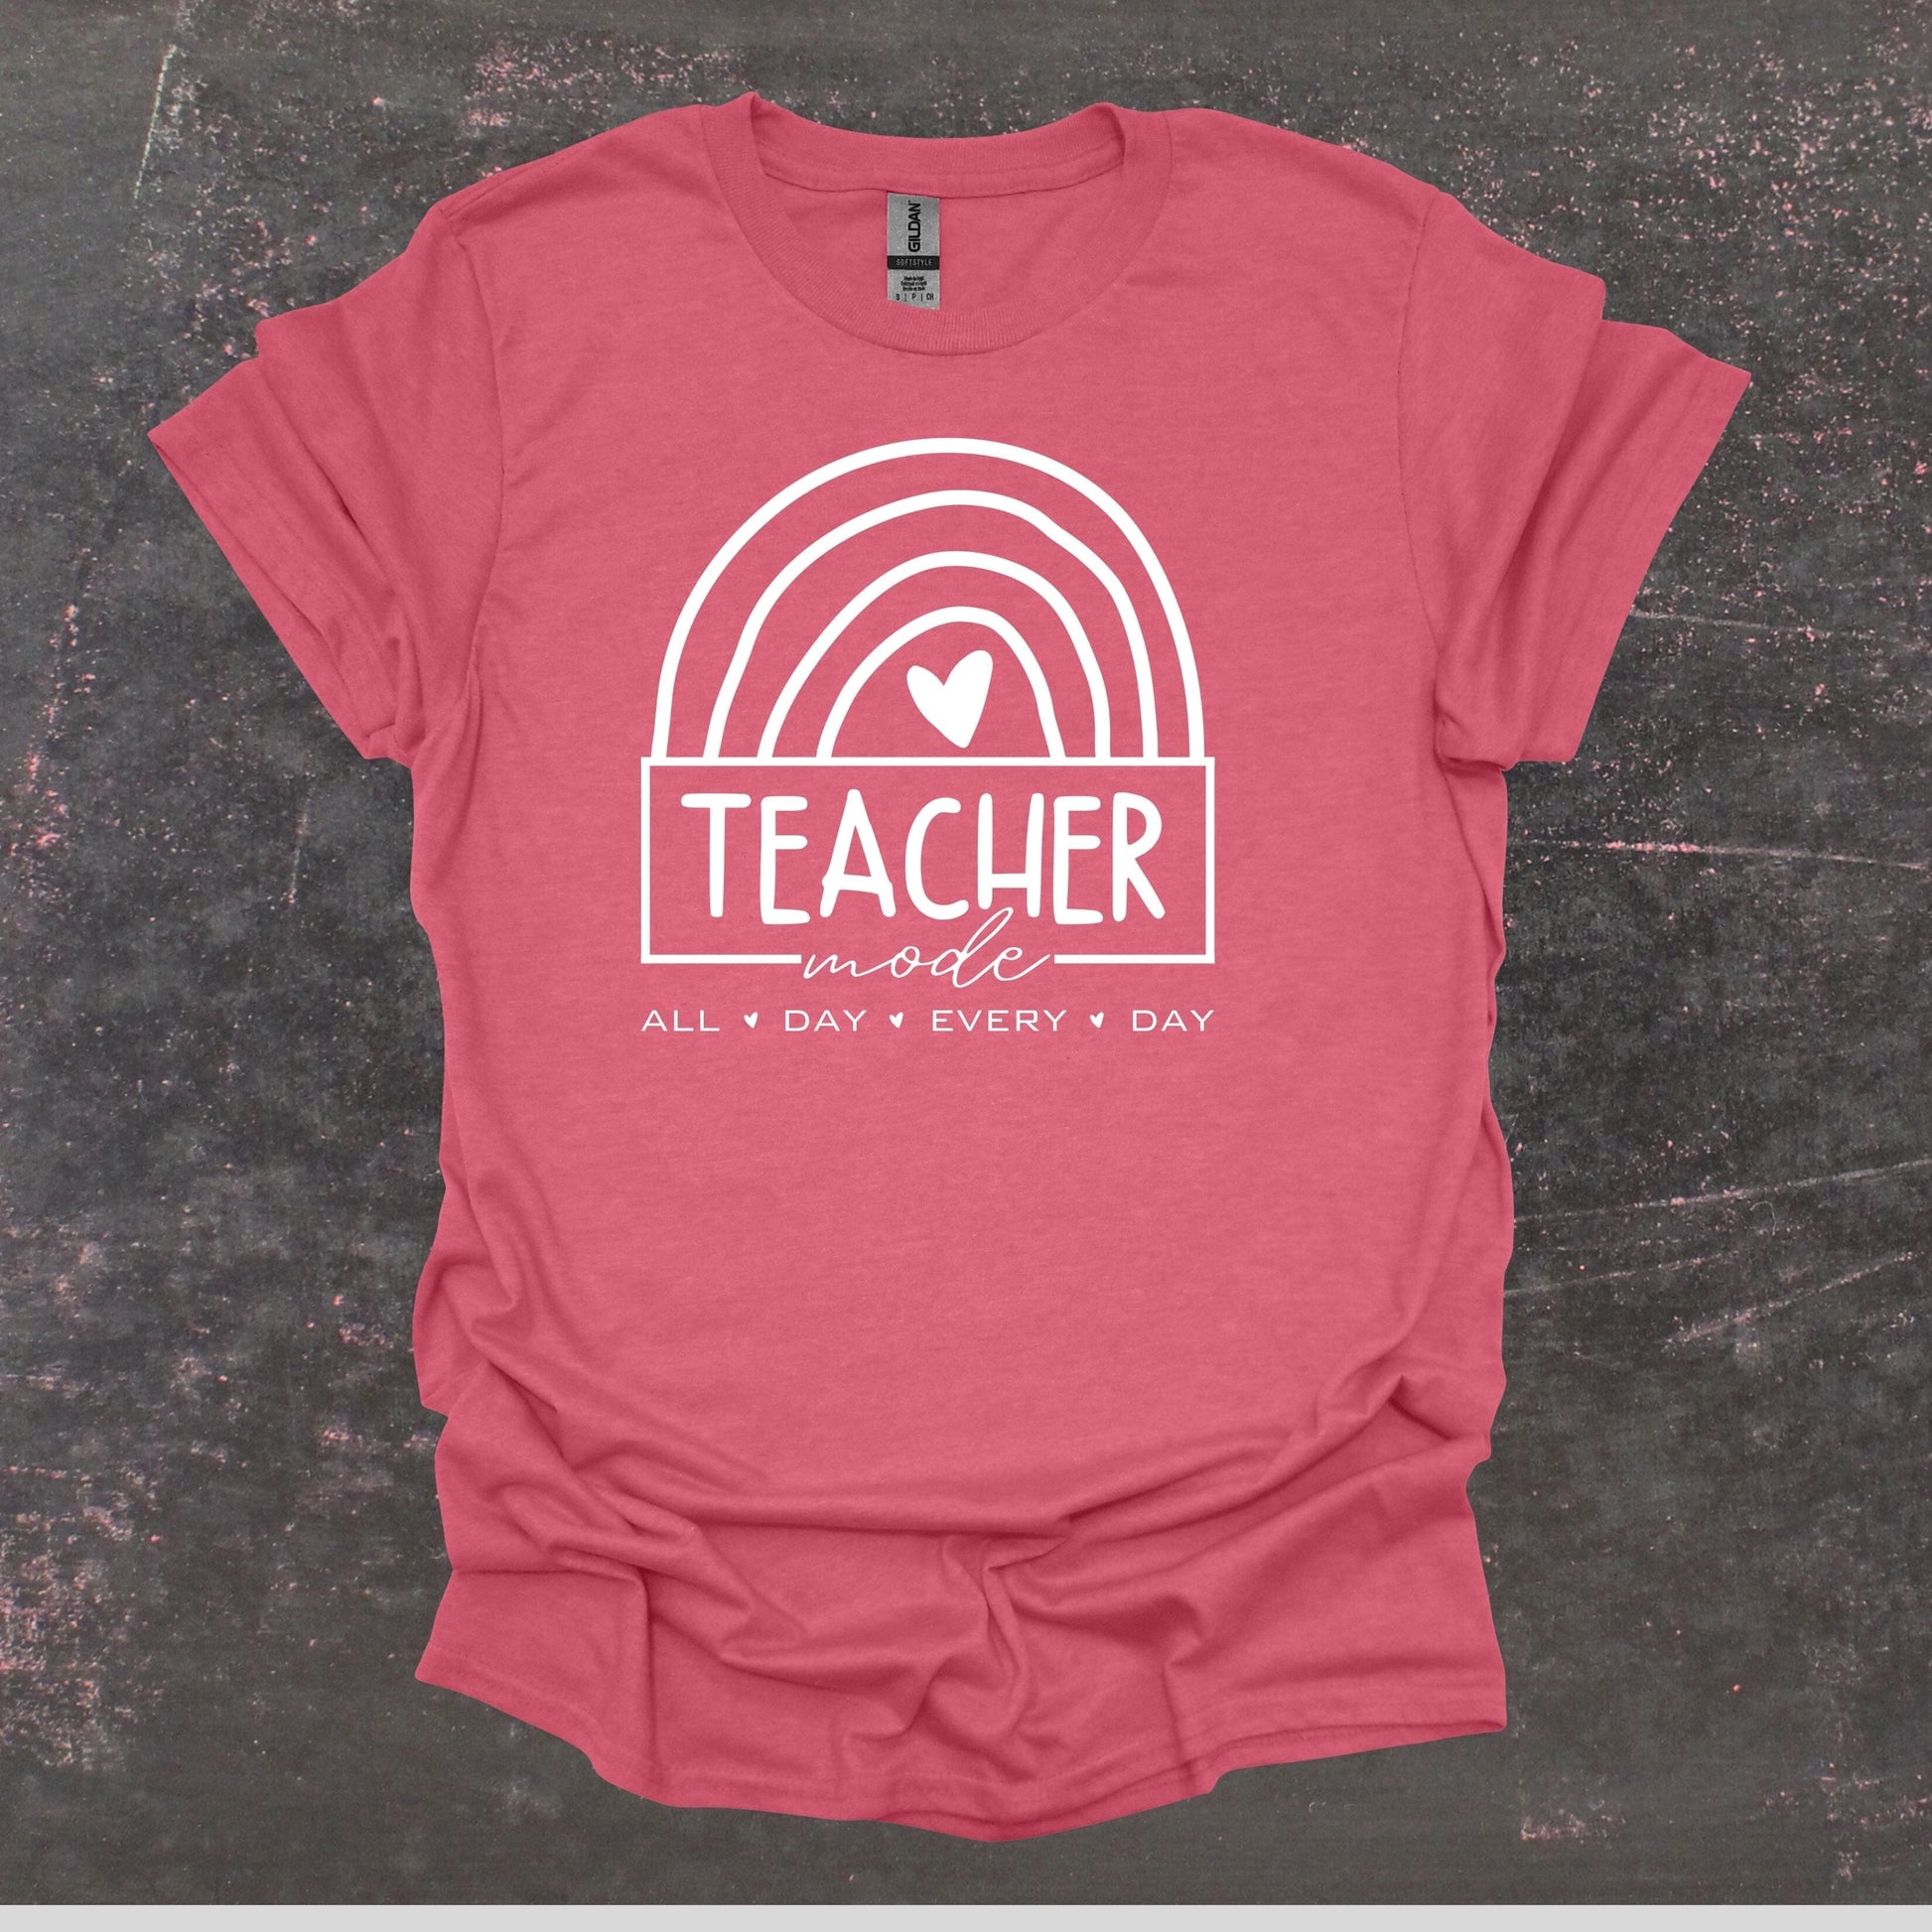 Teacher Mode - Teacher T Shirt - Adult Tee Shirts T-Shirts Graphic Avenue Heather Cardinal Adult Small 